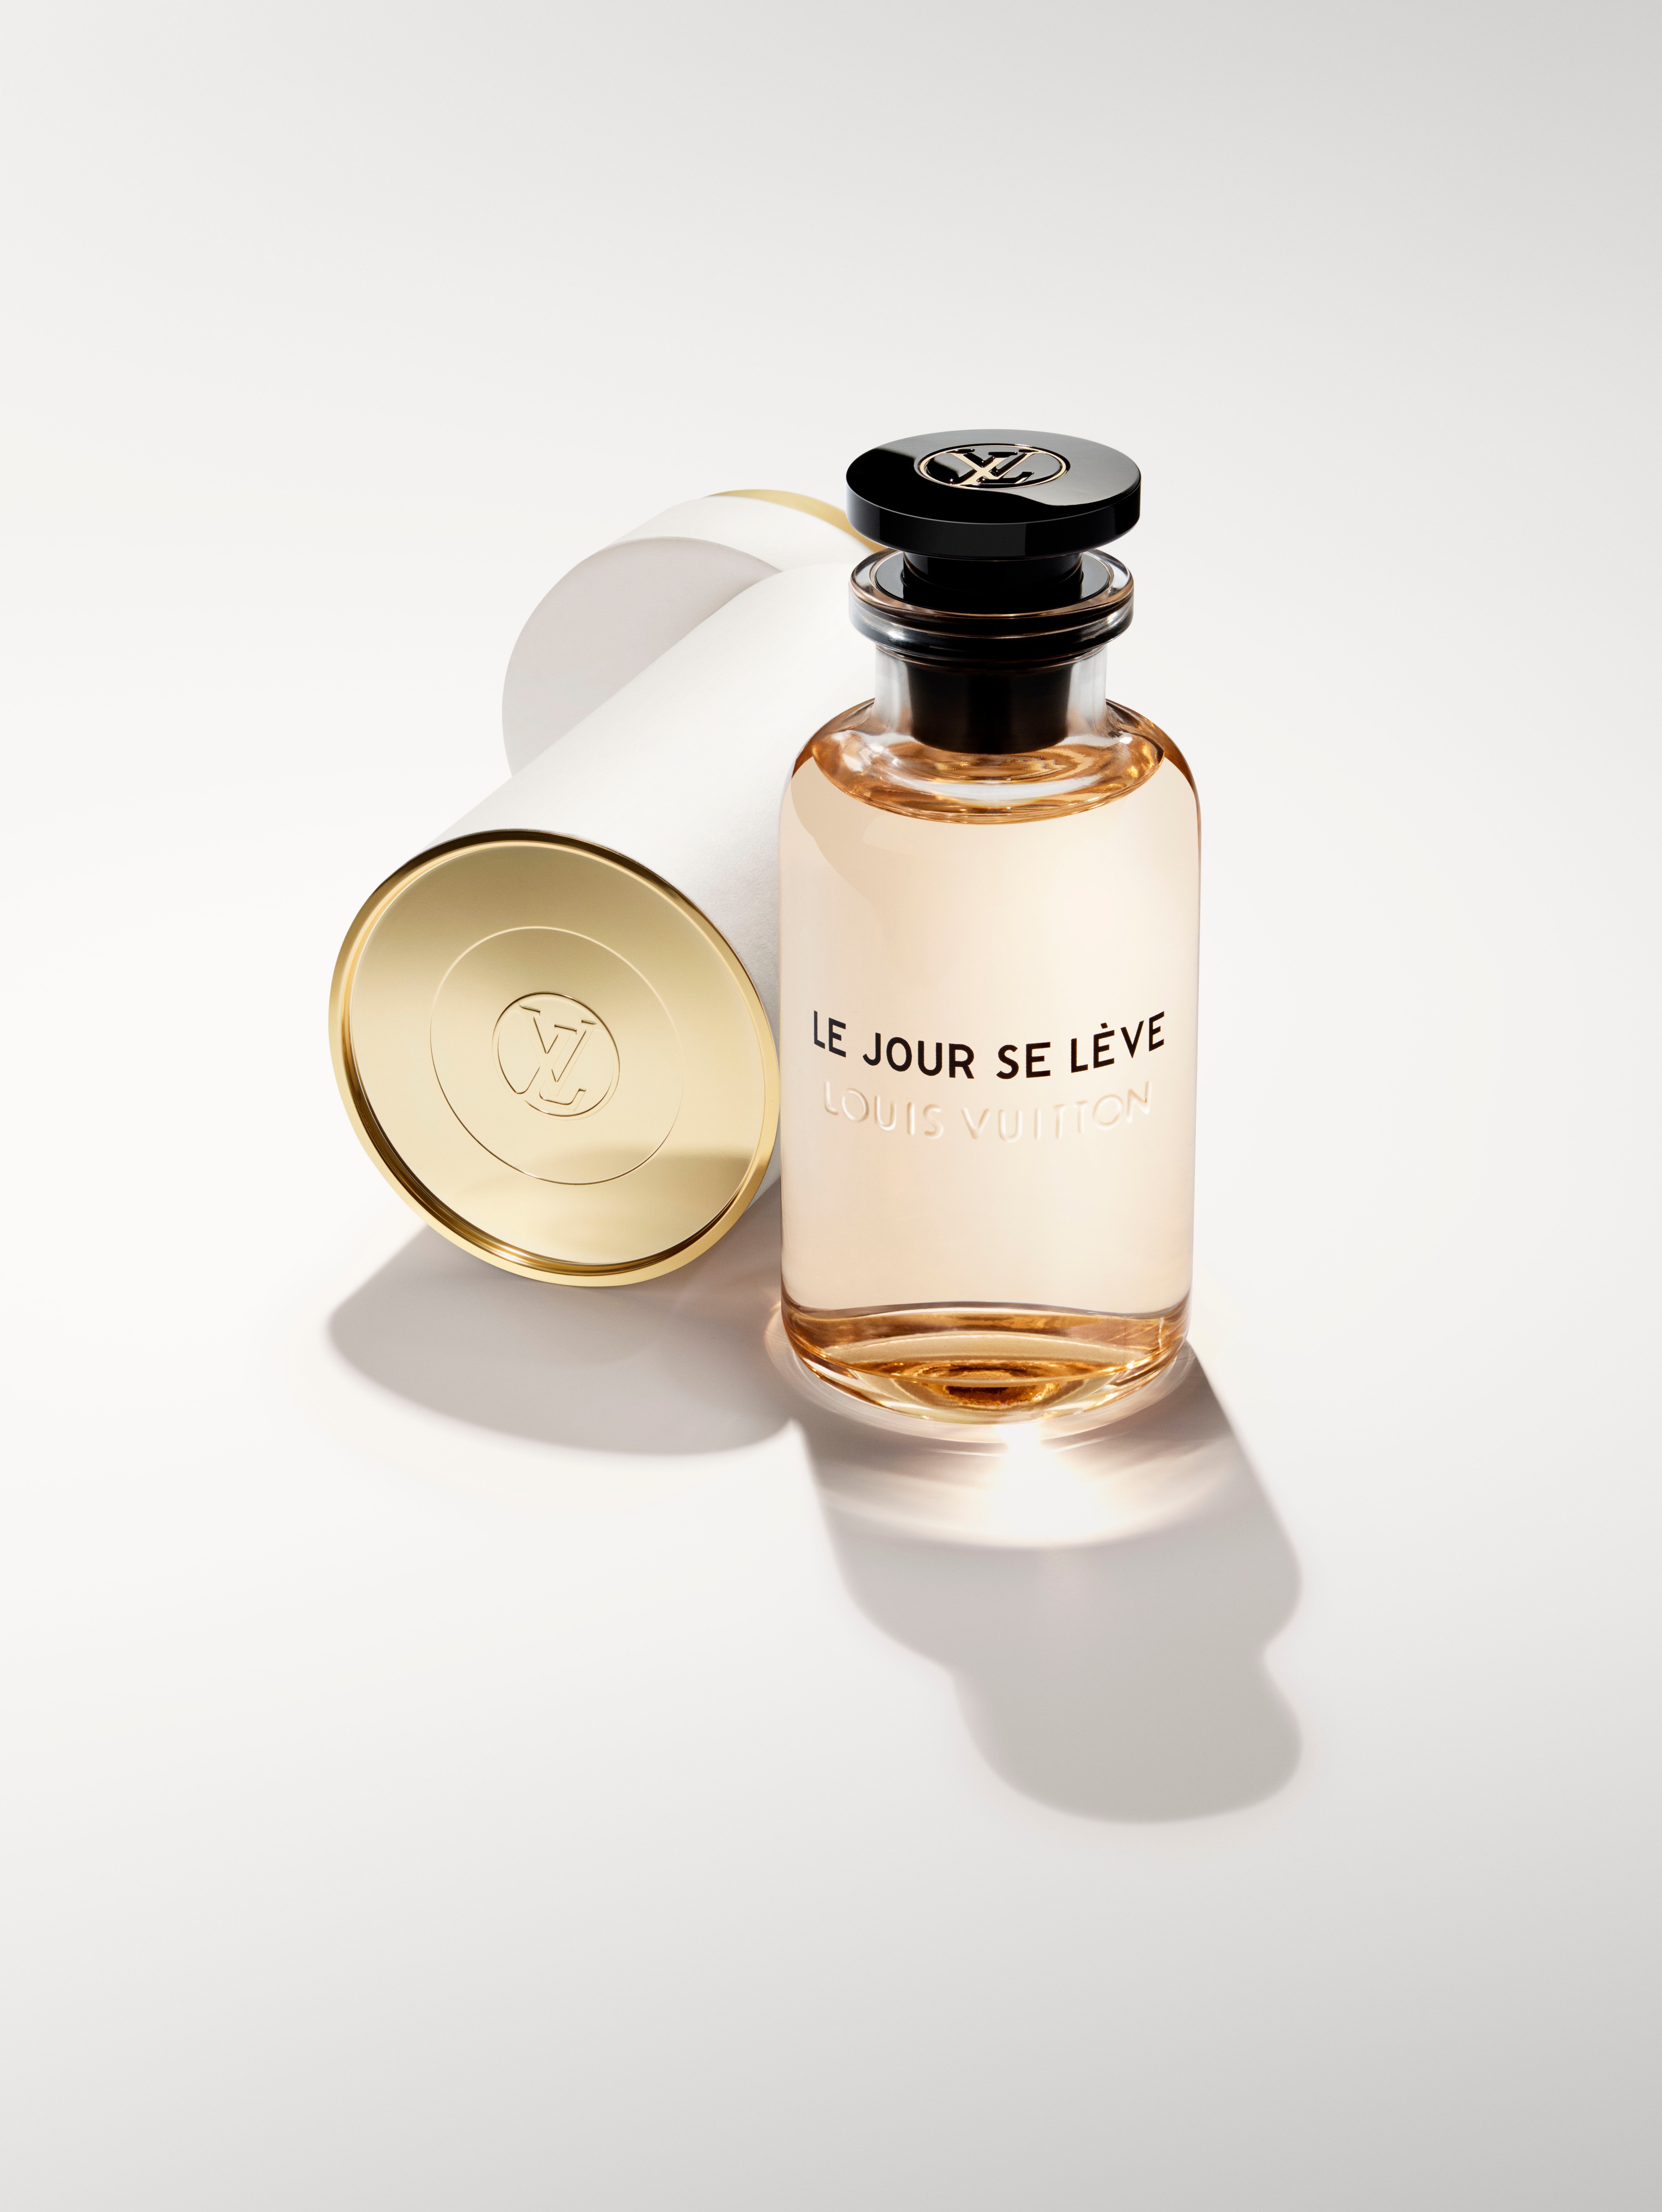 Les Parfums Louis Vuitton Pops Up at Yorkdale